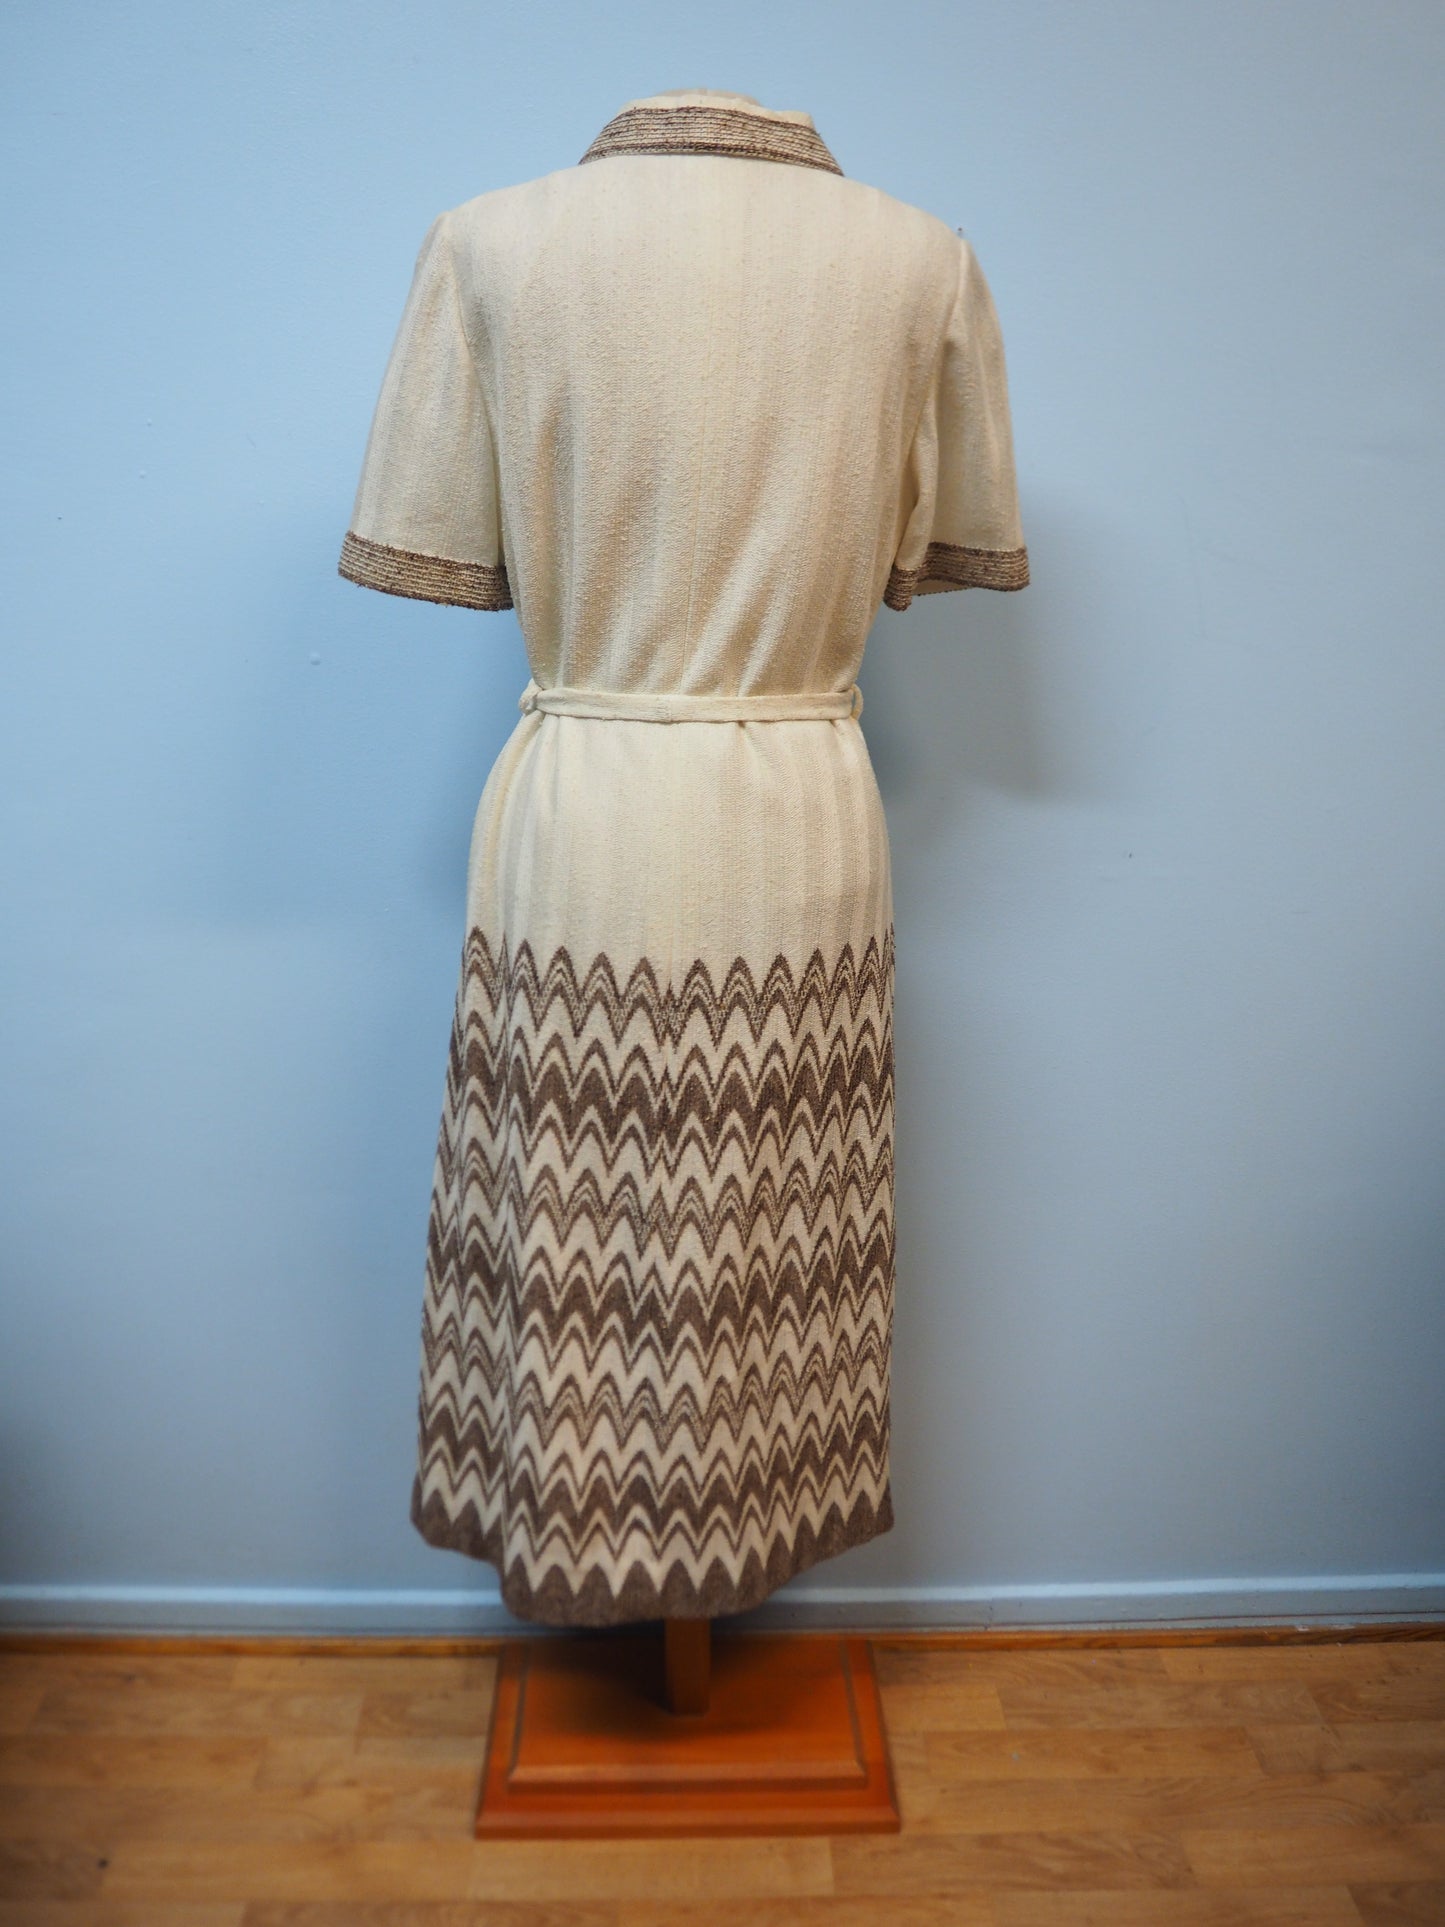 Vaalea raidallinen Caterinan mekko käyttämätöntä vanhaa varastoa